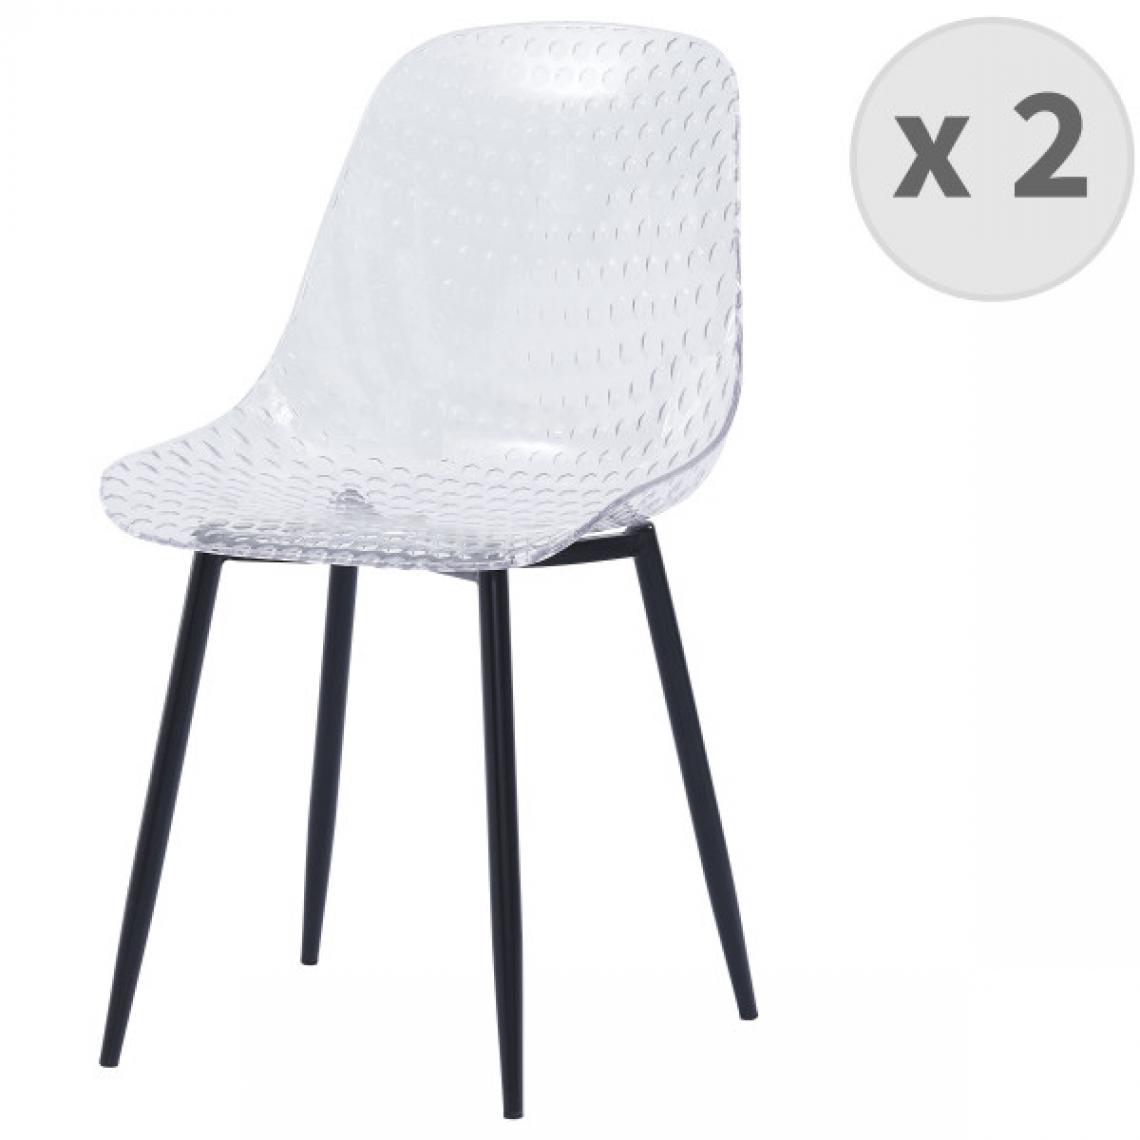 Moloo - GLASS - Chaise modern design polycarbonate transparent pieds métal noir(x2) - Chaises